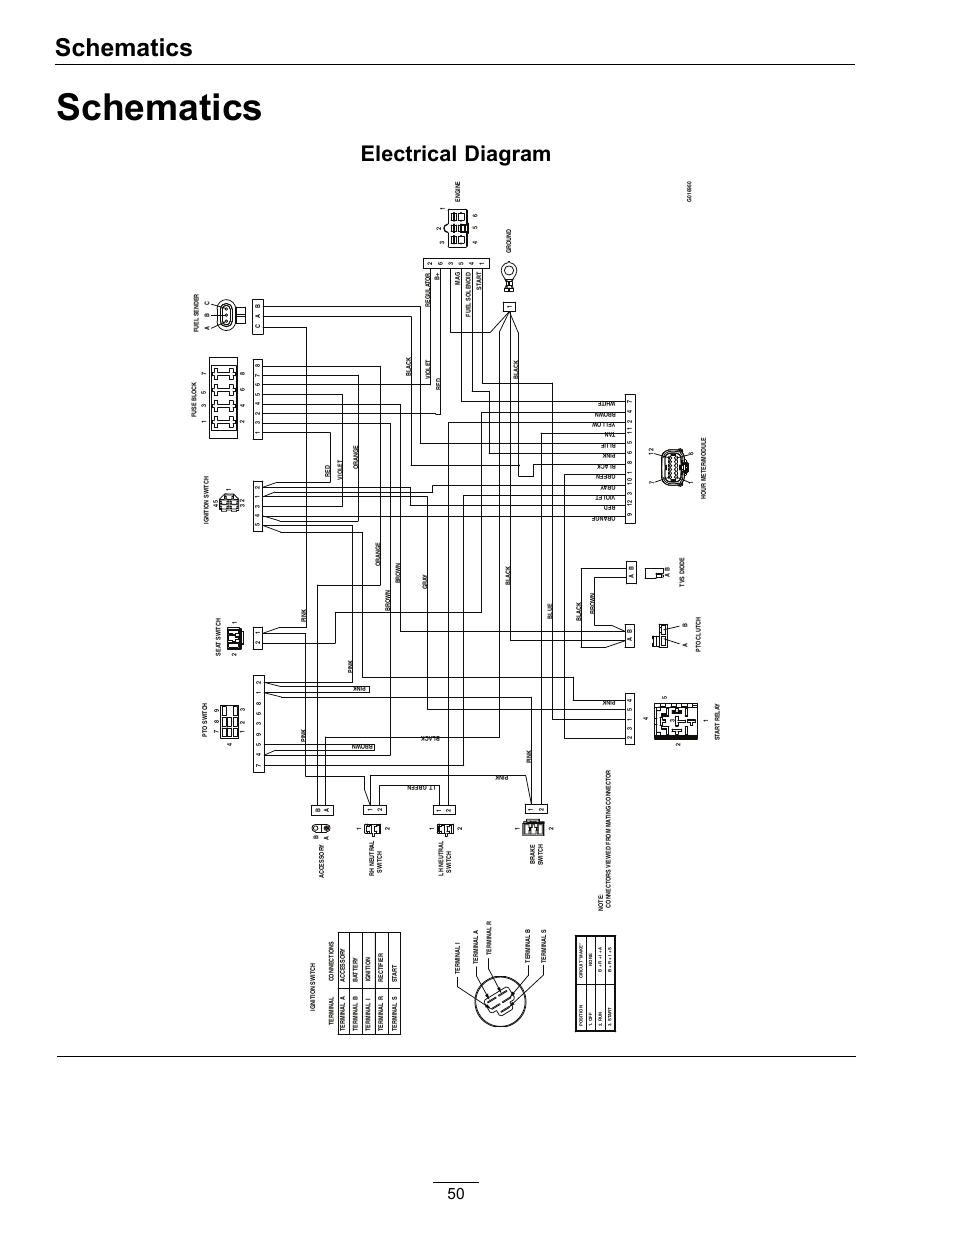 viair relay wiring diagram